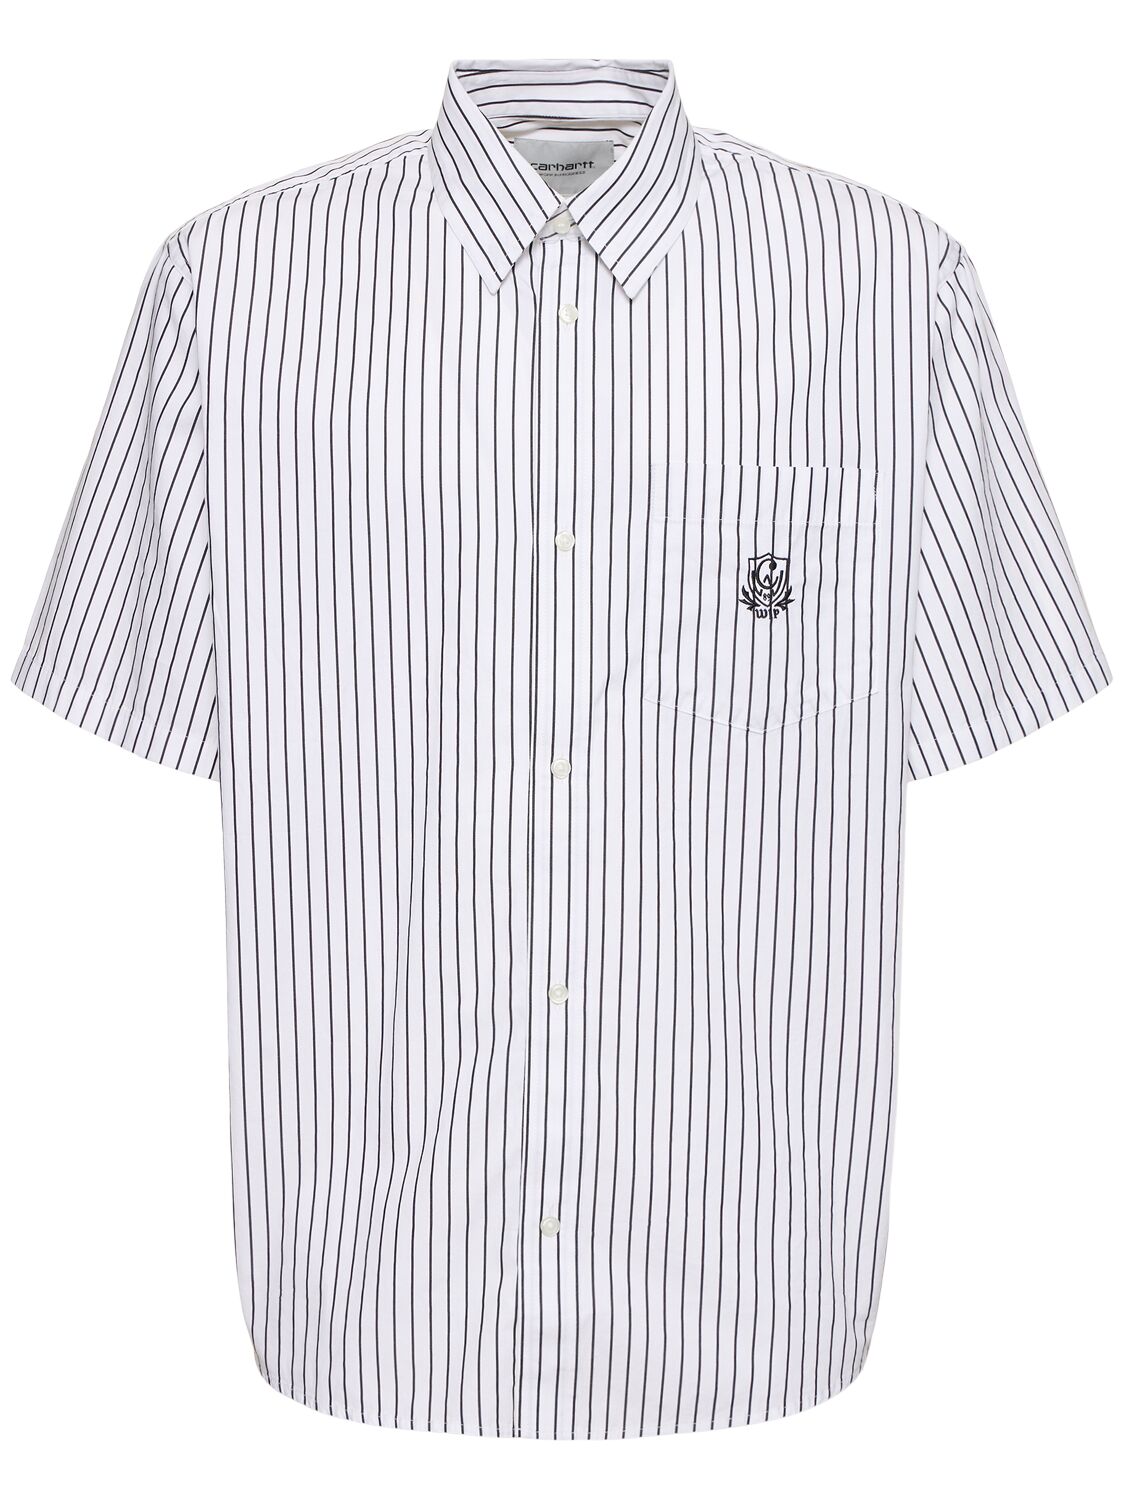 Image of Short Sleeve Linus Shirt